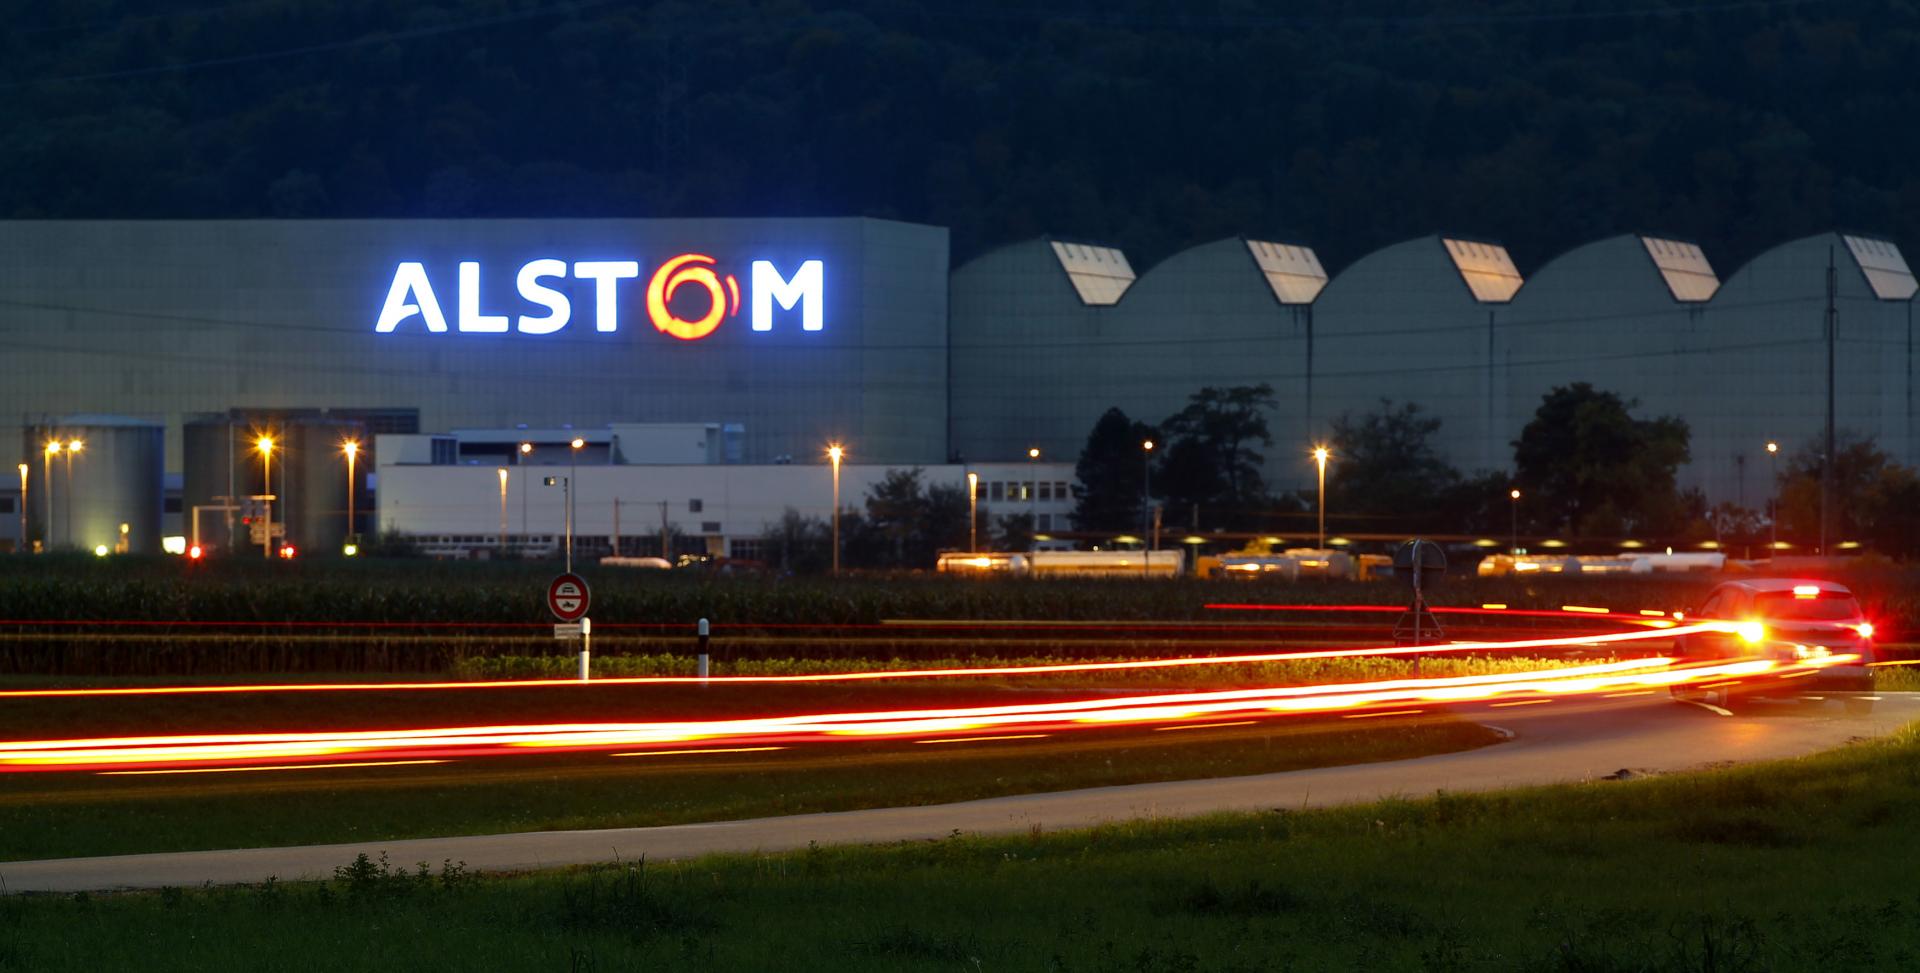 Alstom reclutera' 7500 persone nel 2022